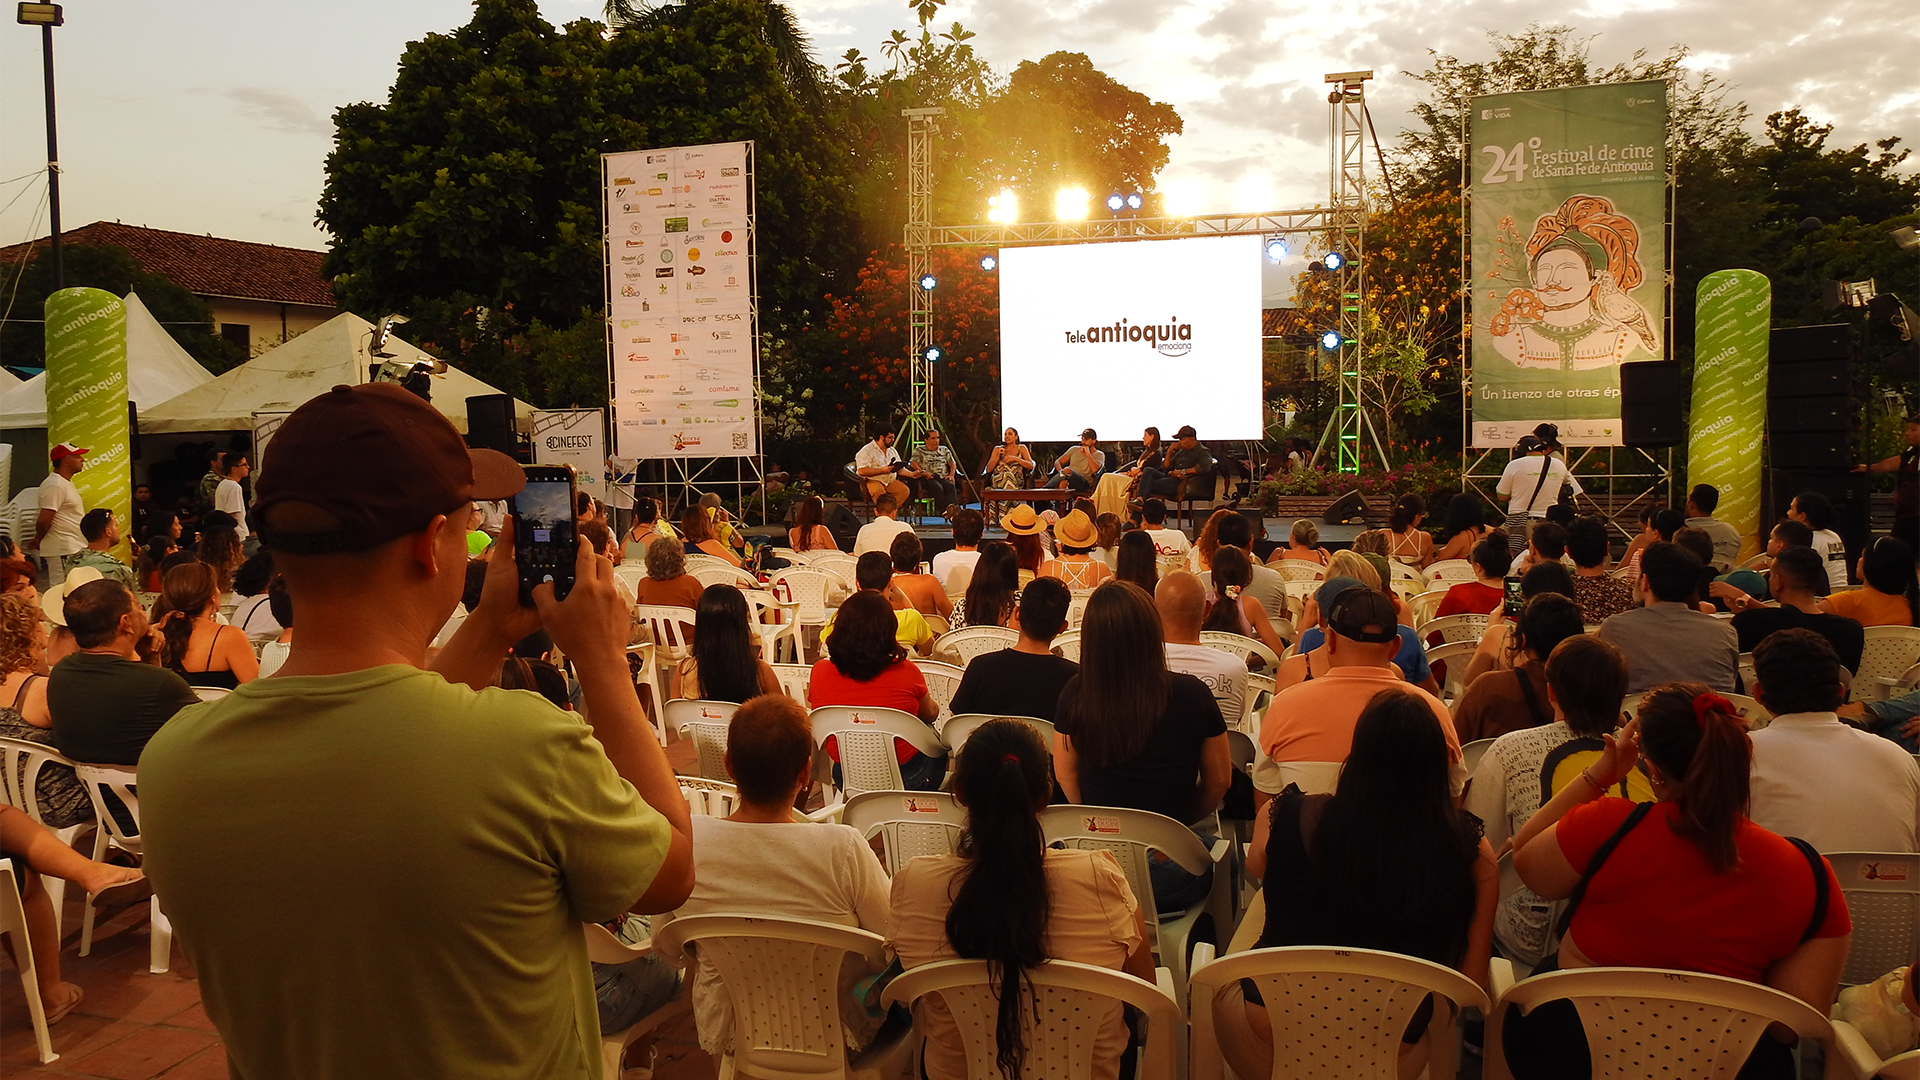 Datos curiosos del Festival de Cine de Santa de Fe de Antioquia en el País de la Belleza